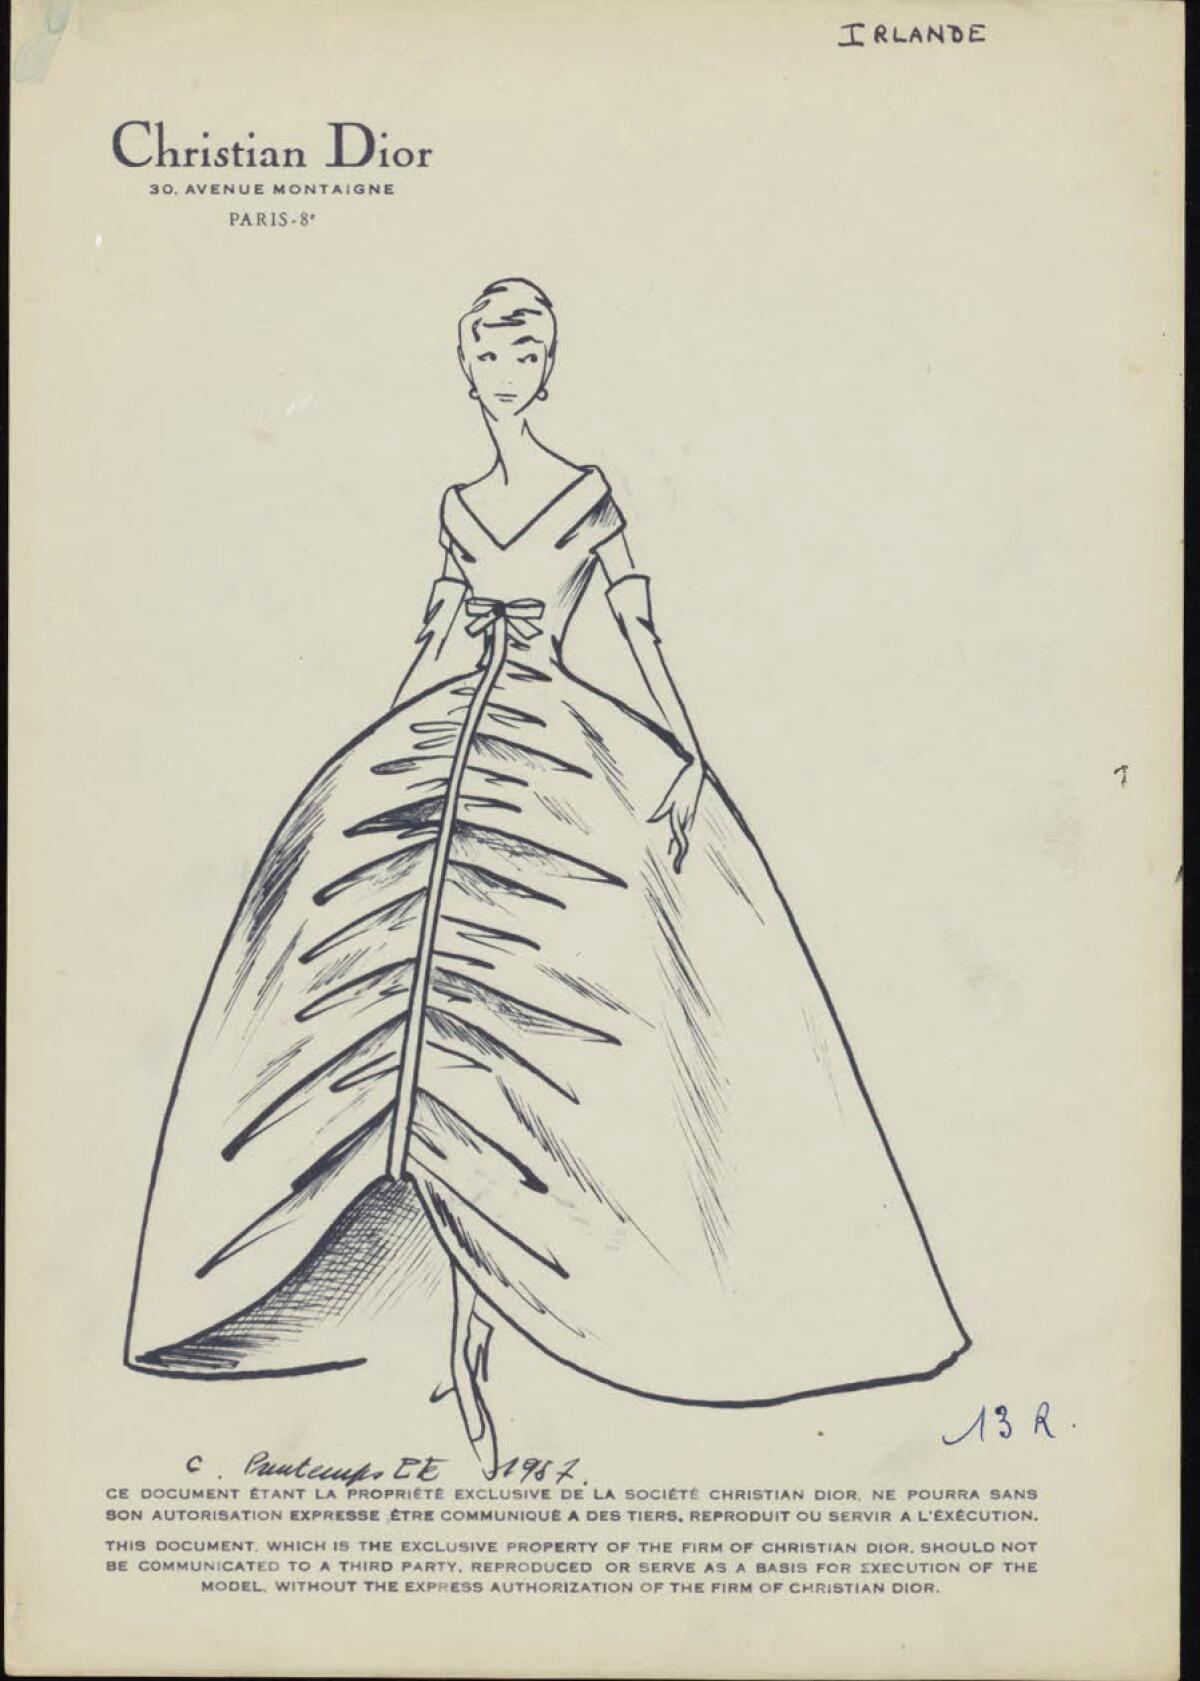 A sketch of a mid-century Dior design.